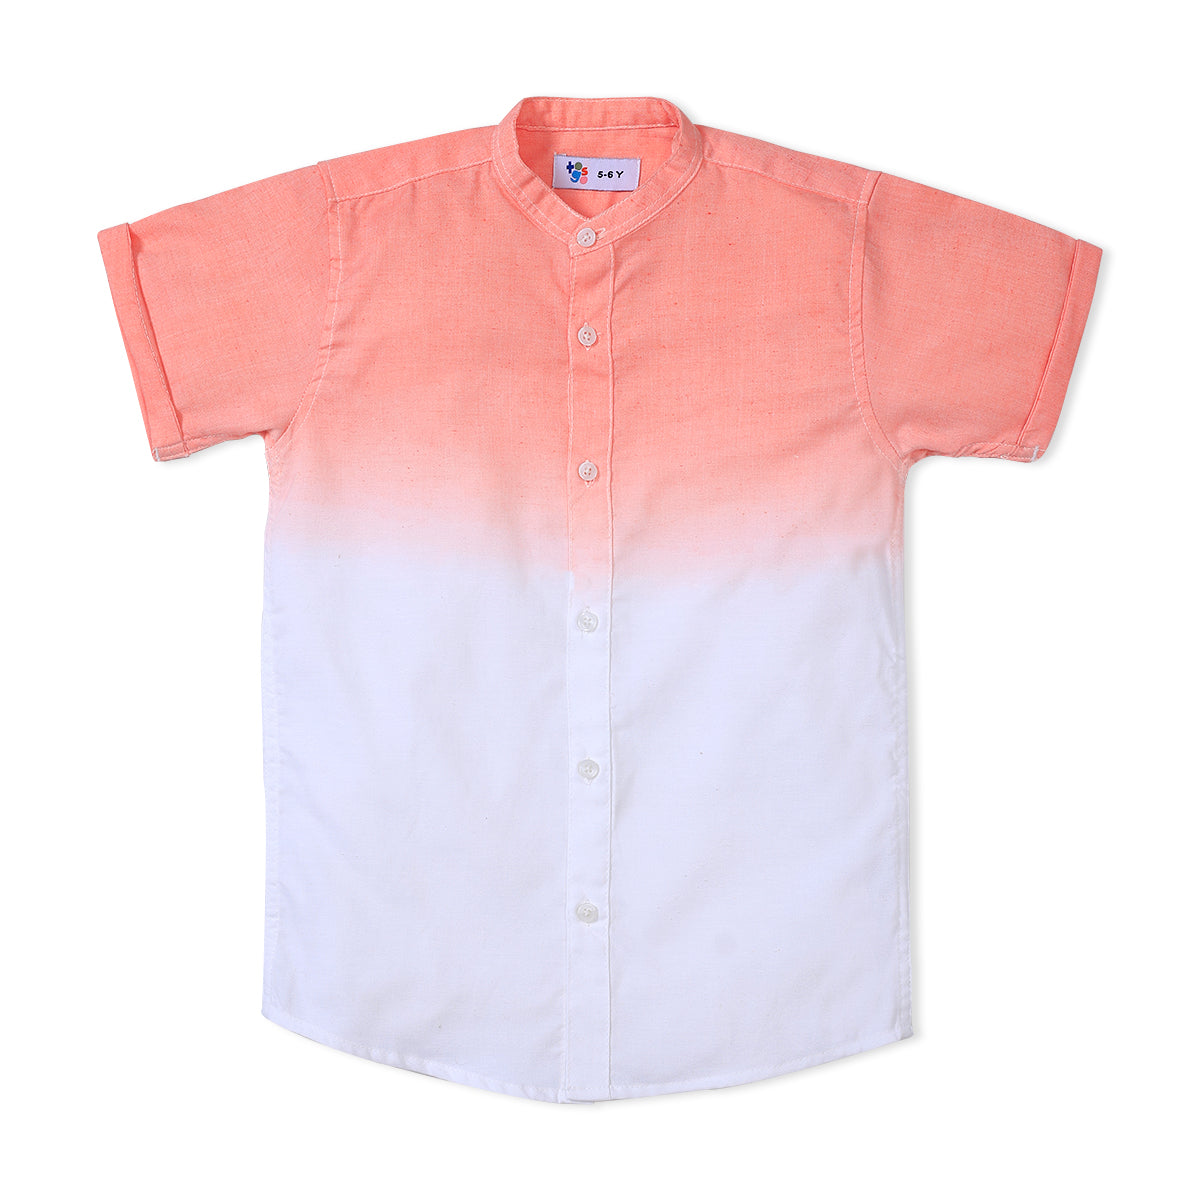 Pink & White Tie Dye Shirt